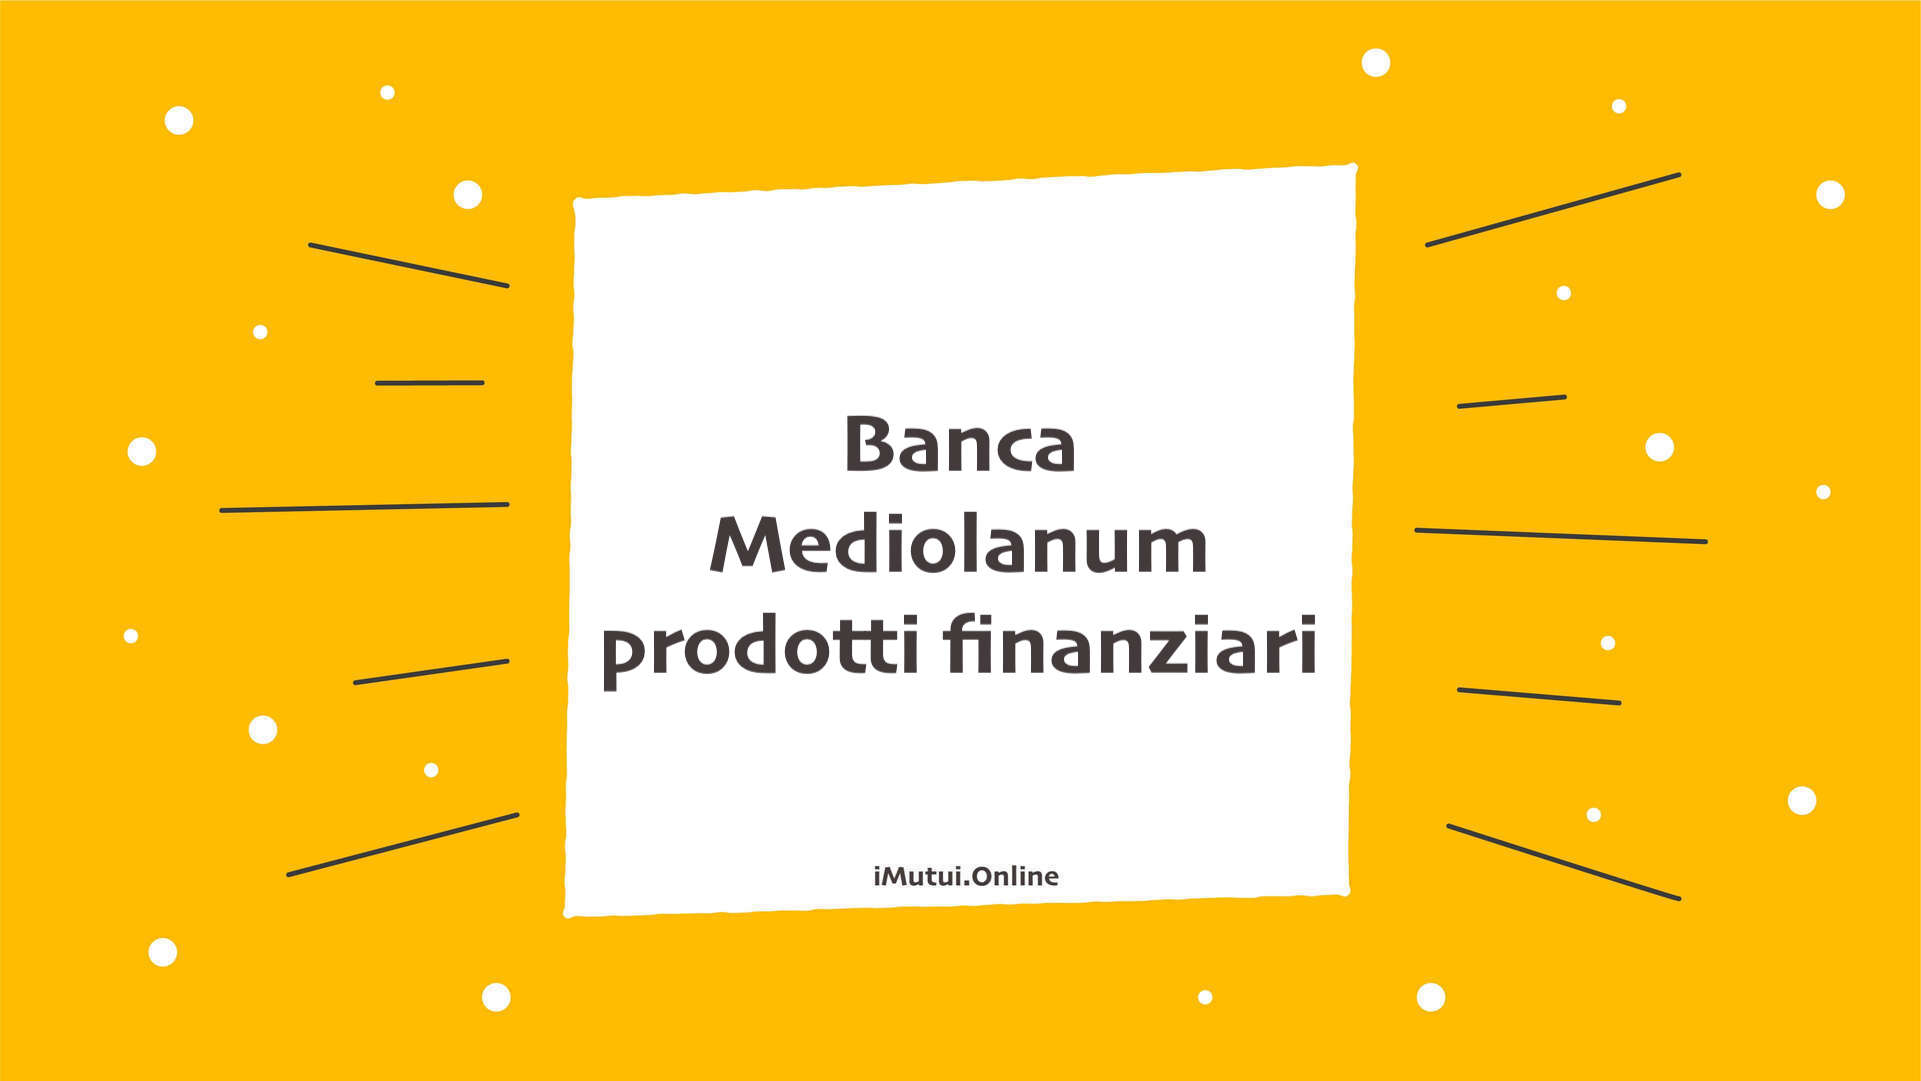 Banca Mediolanum prodotti finanziari